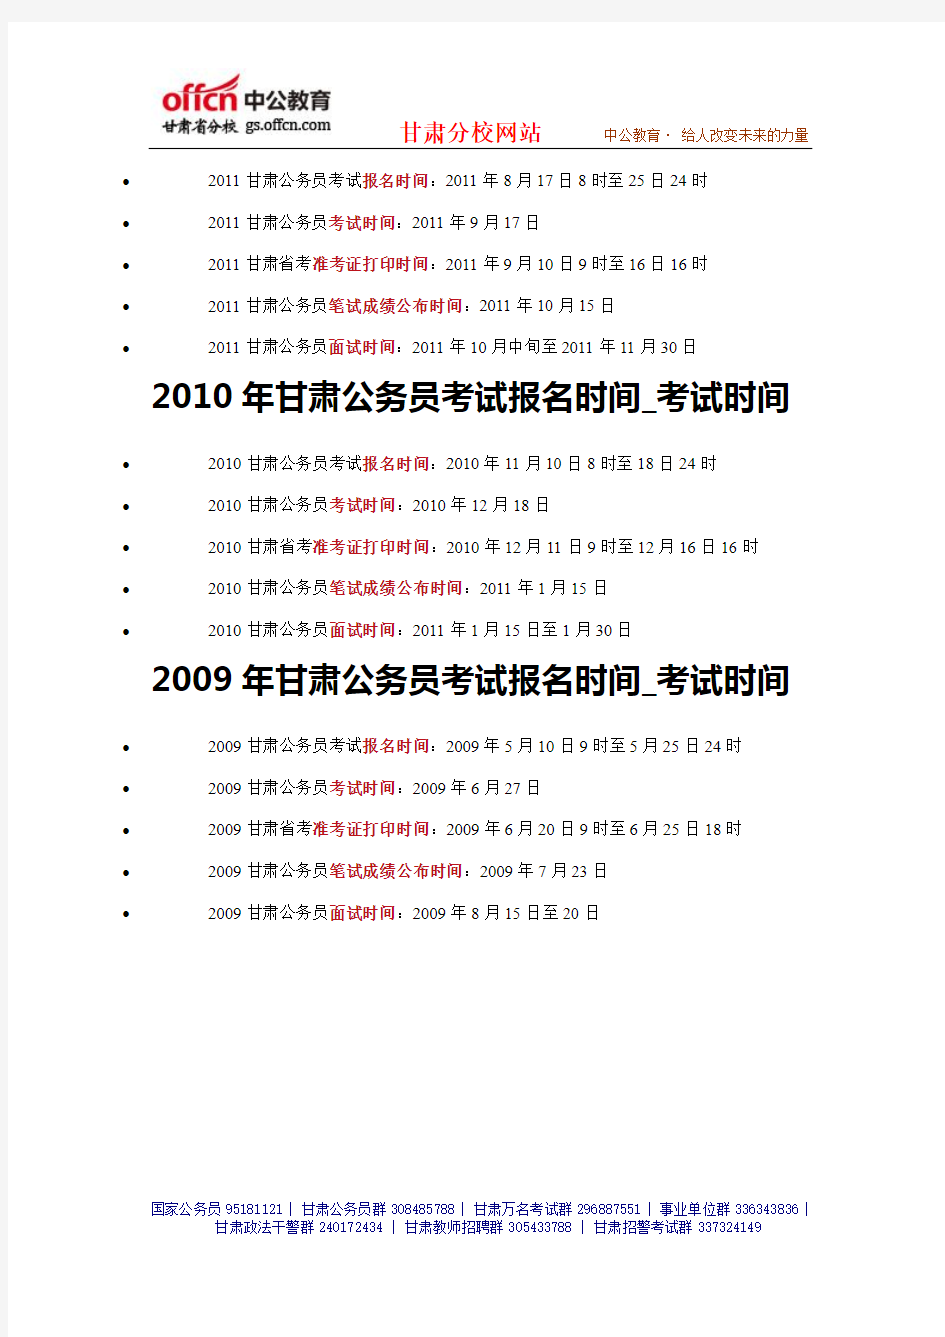 2014年甘肃省公务员考试时间丨报名时间丨职位表 (12)